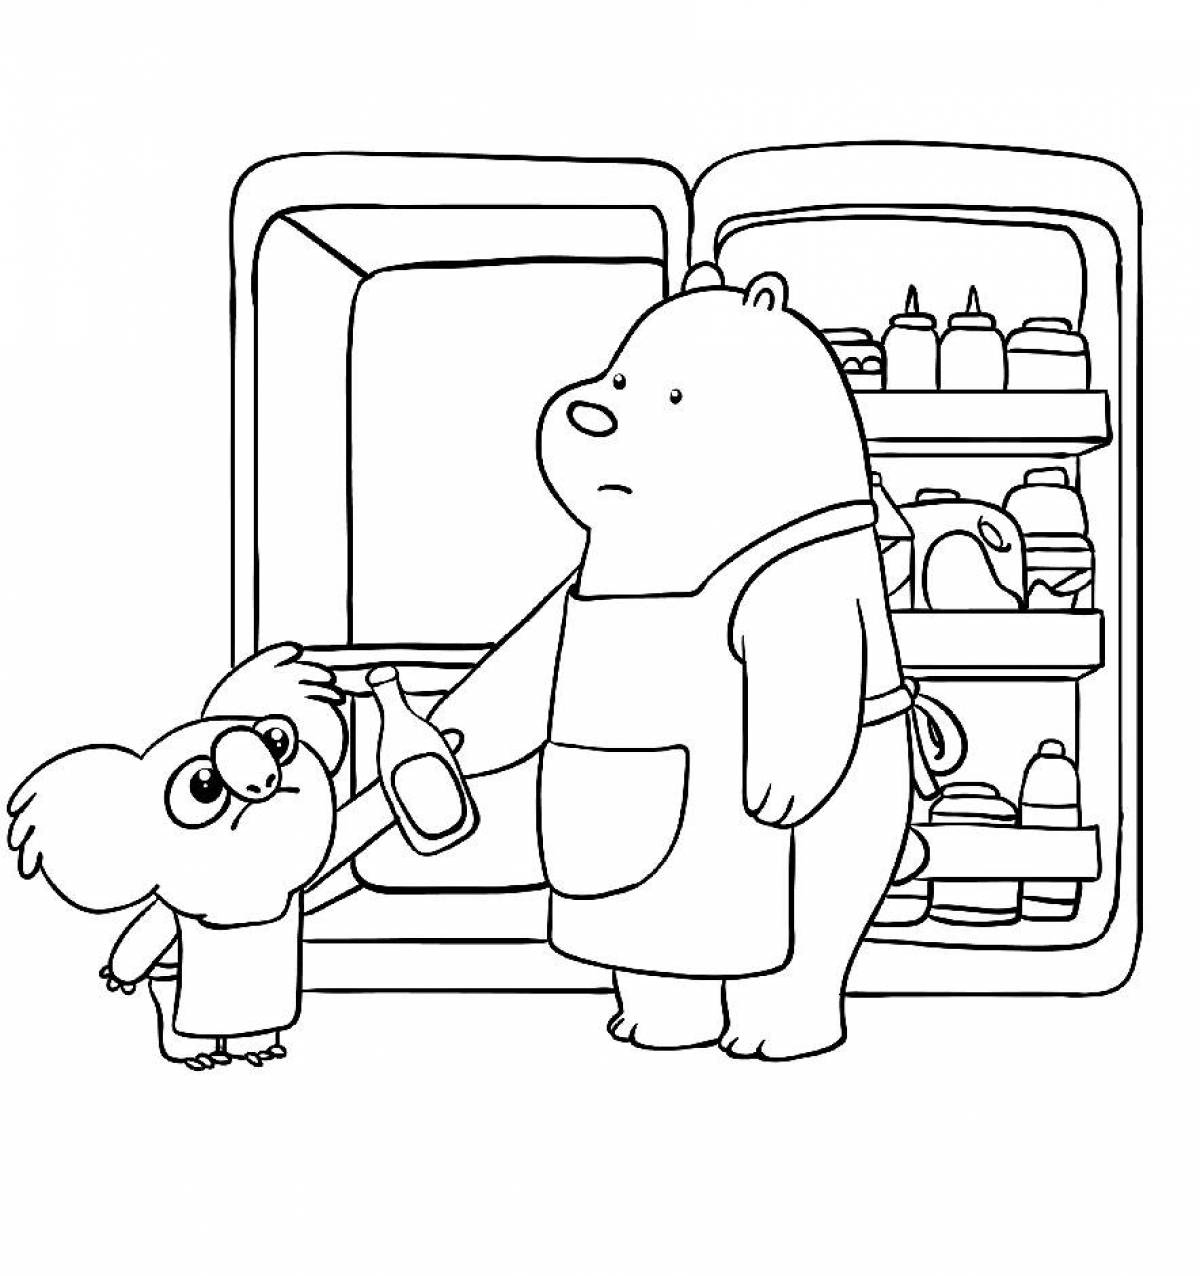 Хагги раскраска распечатать. Раскраска холодильник. Вся правда о медведях раскраска. Холодильник раскраска для детей. Раскраска холодильник с продуктами.